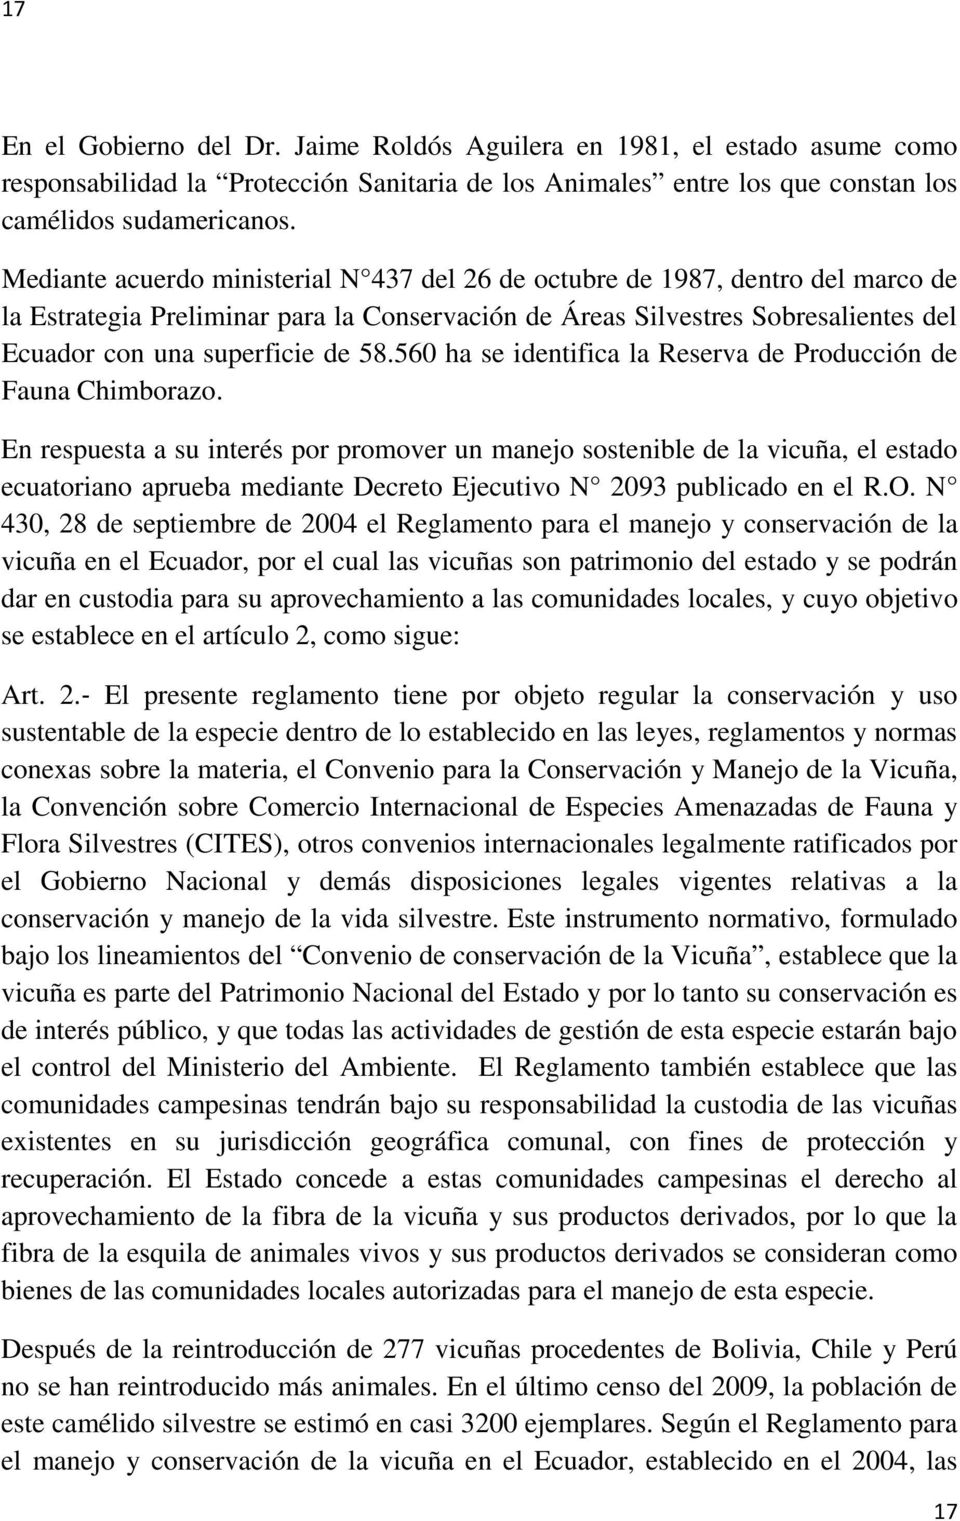 560 ha se identifica la Reserva de Producción de Fauna Chimborazo.